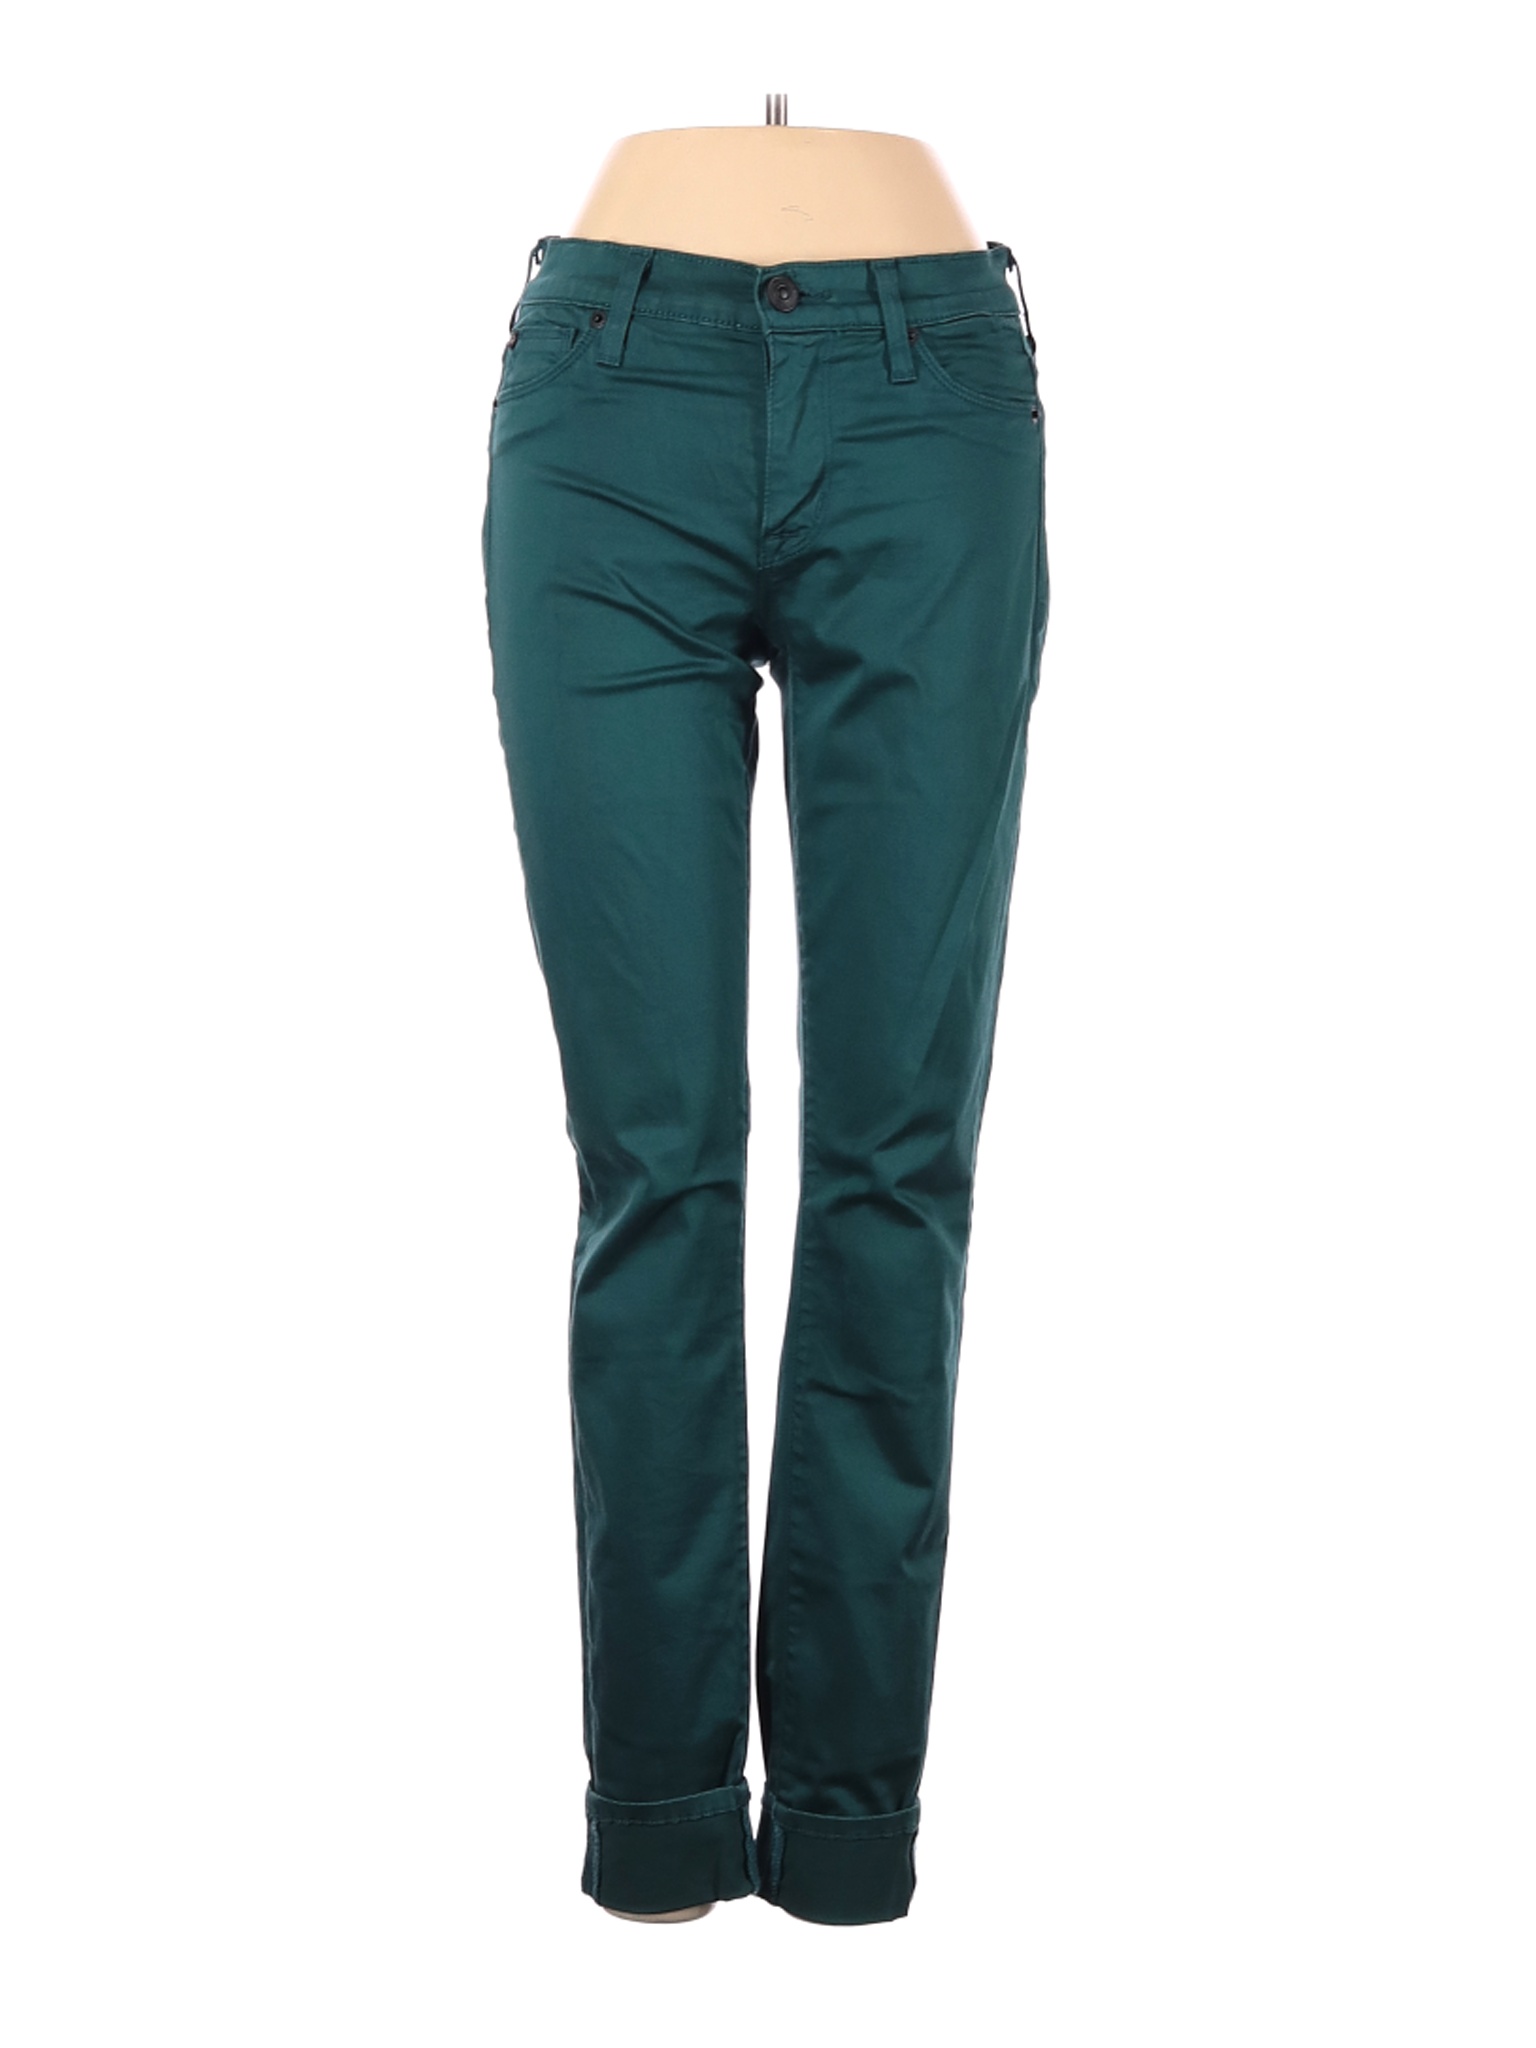 Hudson Jeans Women Green Jeans 24W | eBay